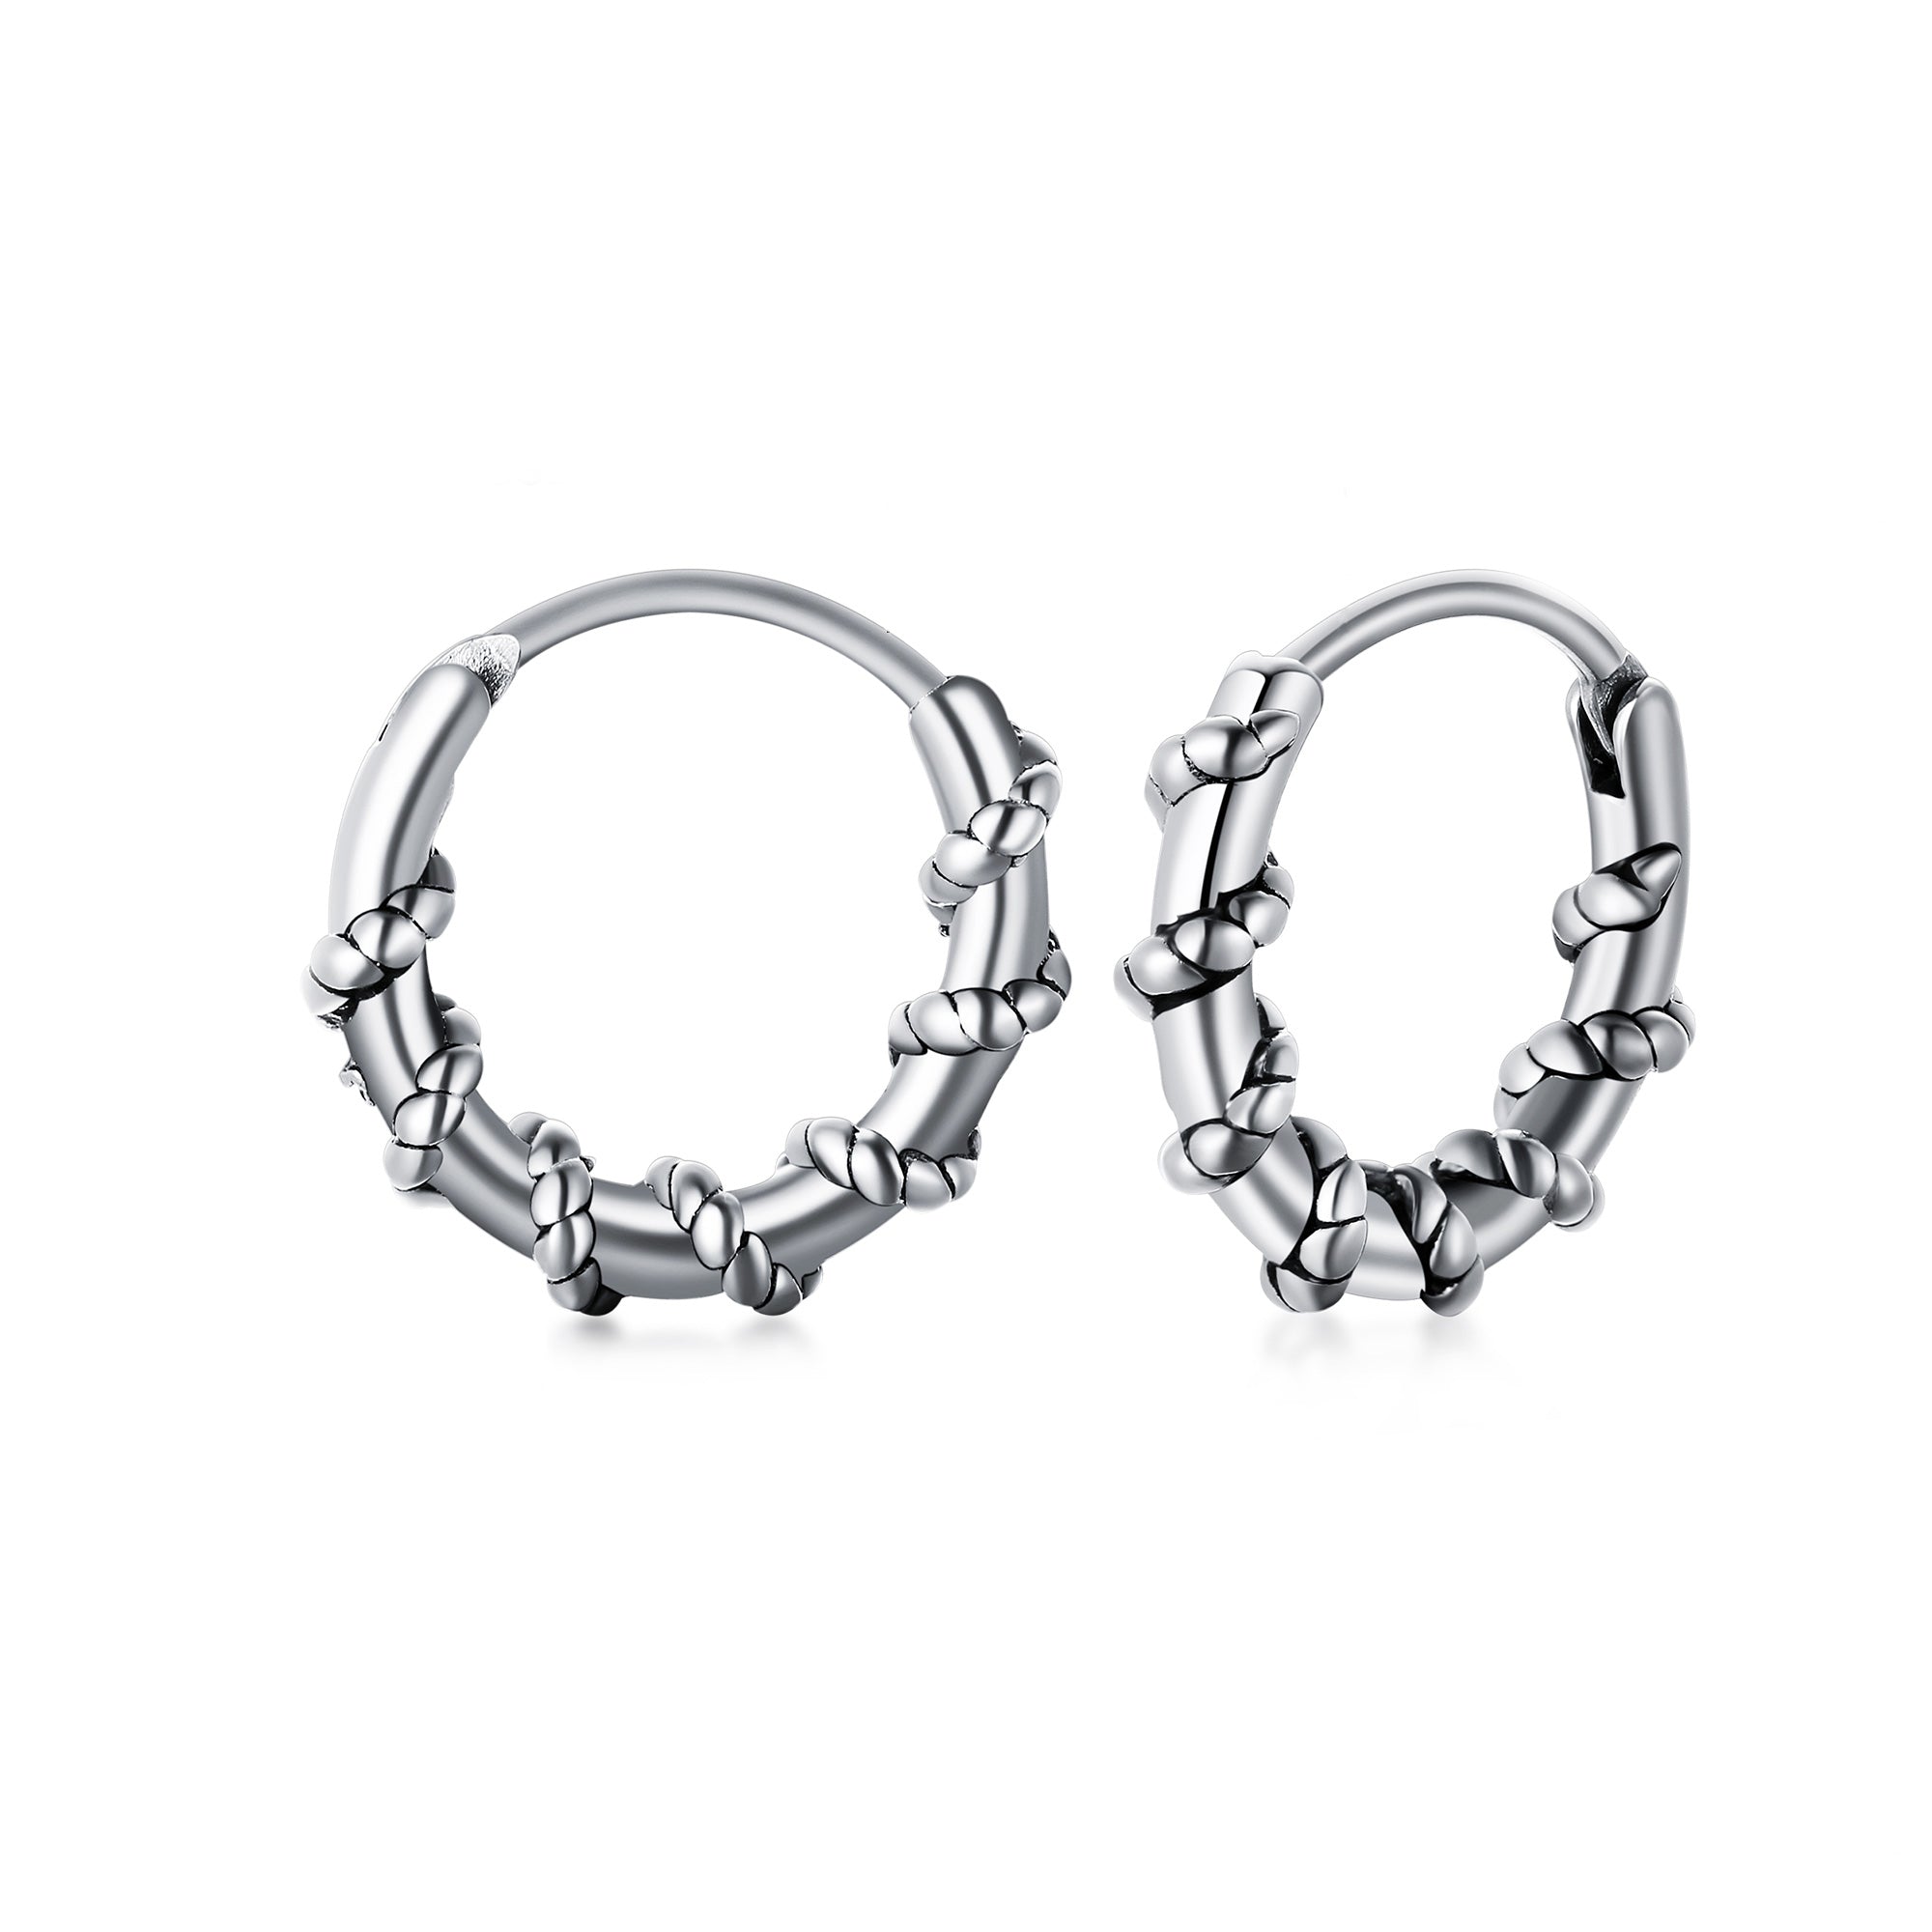 Stainless Steel Intertwined Rope Huggie Earrings